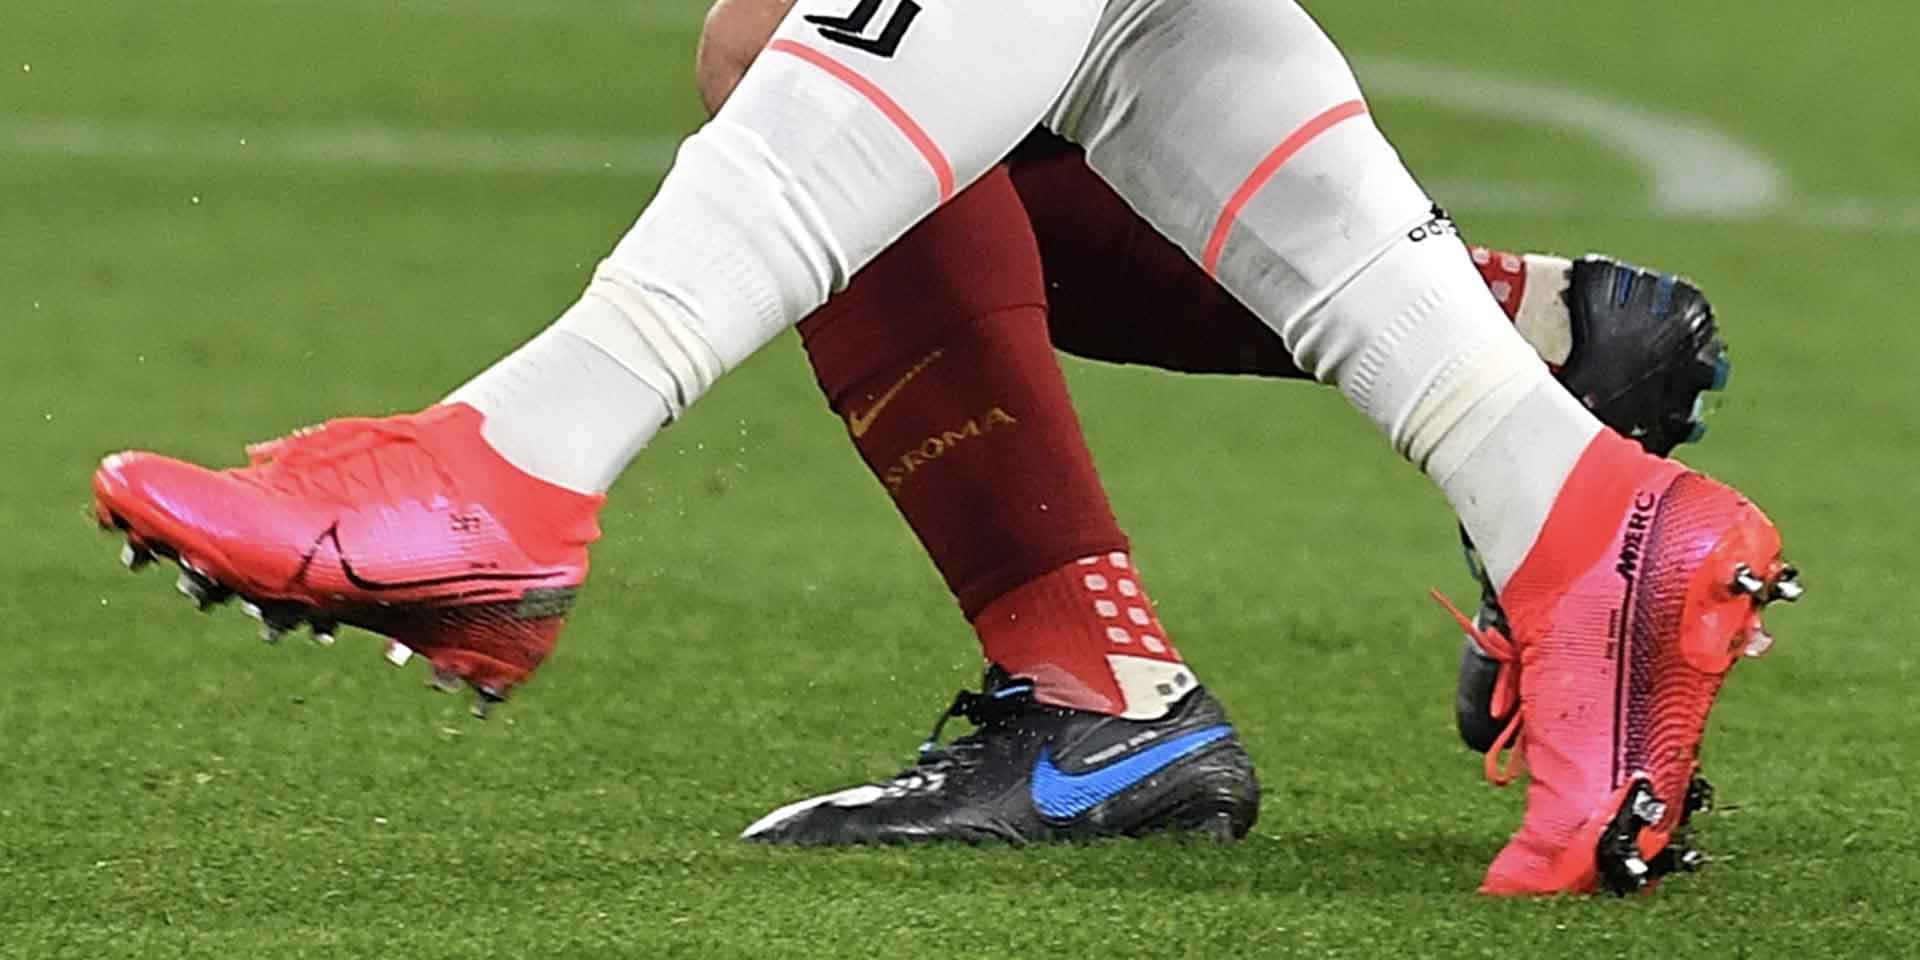 Đế giày bóng đá đinh FG quá mềm dẻo sẽ không chắc chân và dễ chấn thương